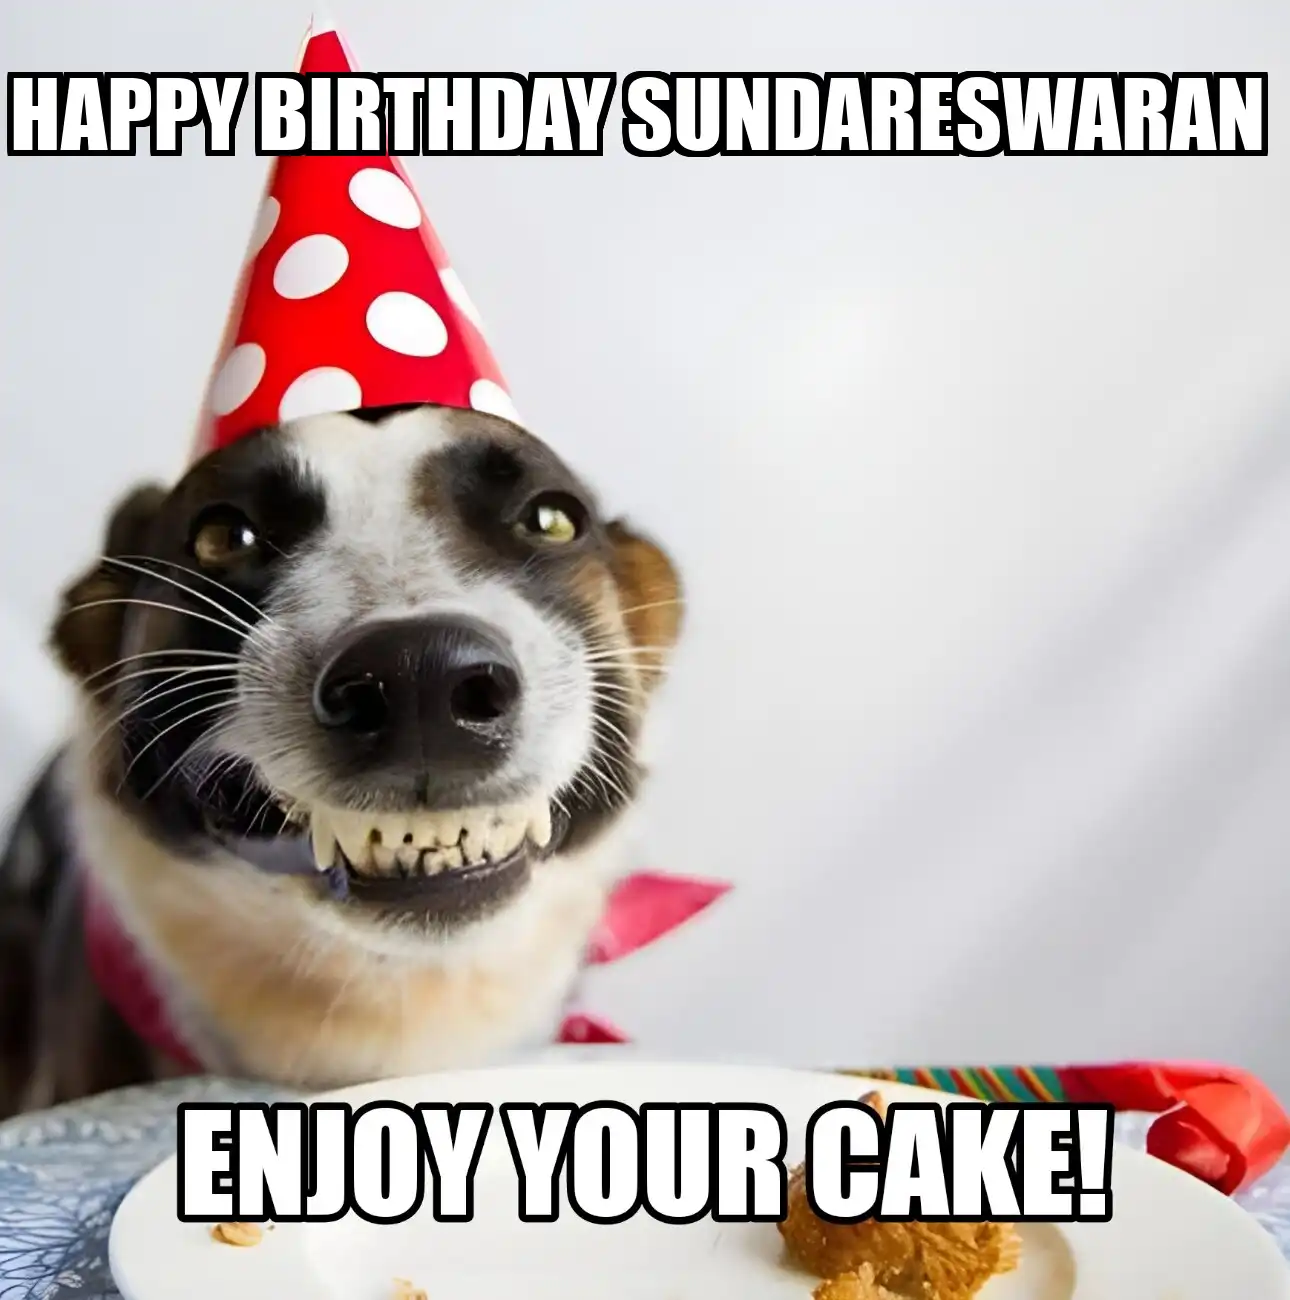 Happy Birthday Sundareswaran Enjoy Your Cake Dog Meme